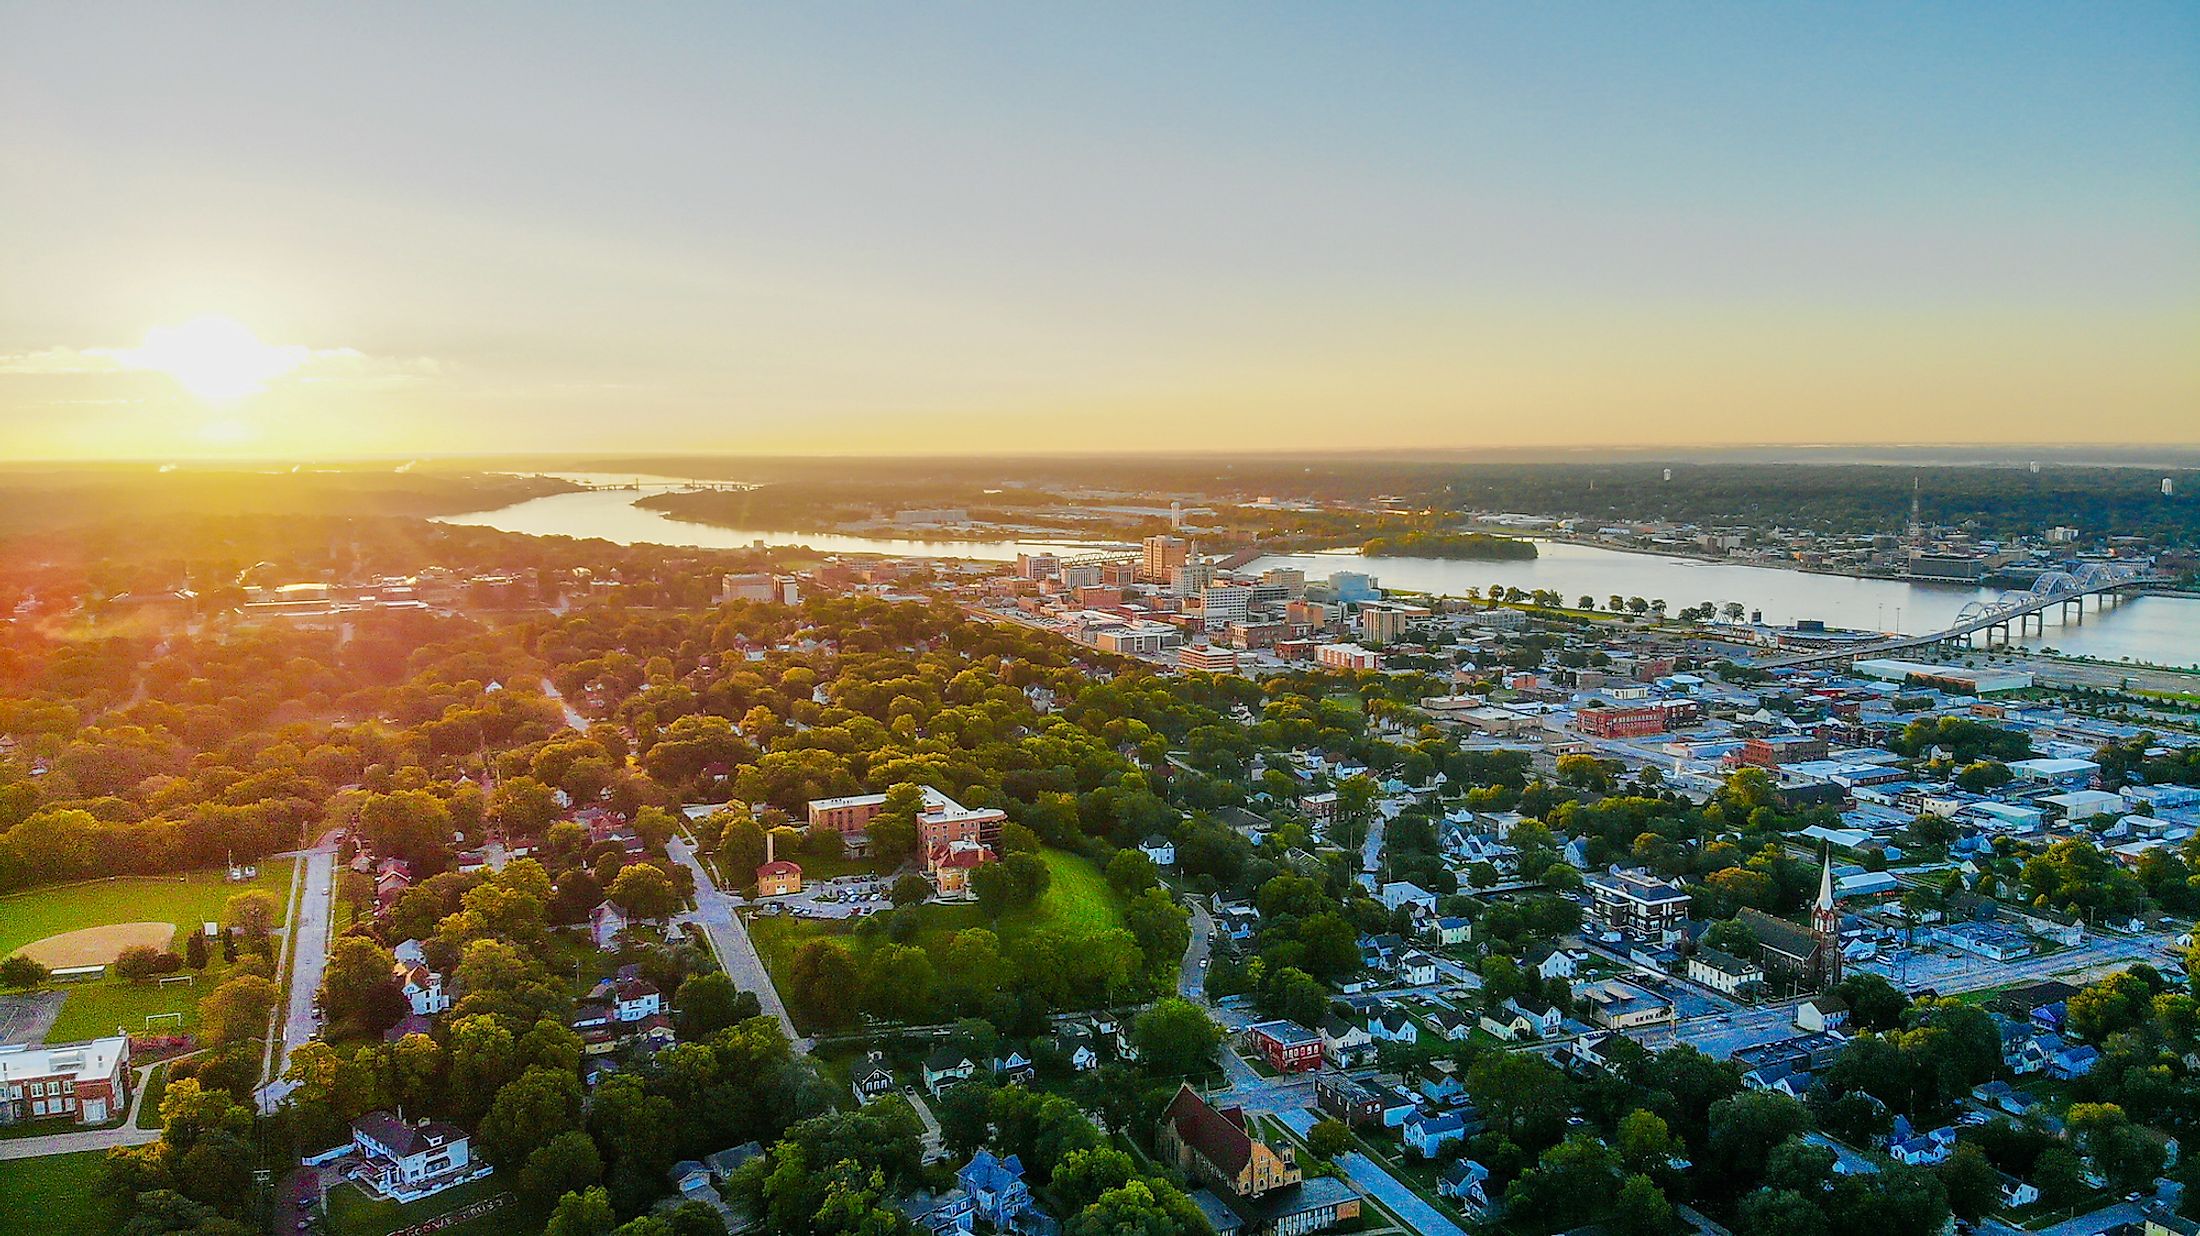 Aerial view of Davenport. Editorial credit: Eduardo Medrano / Shutterstock.com